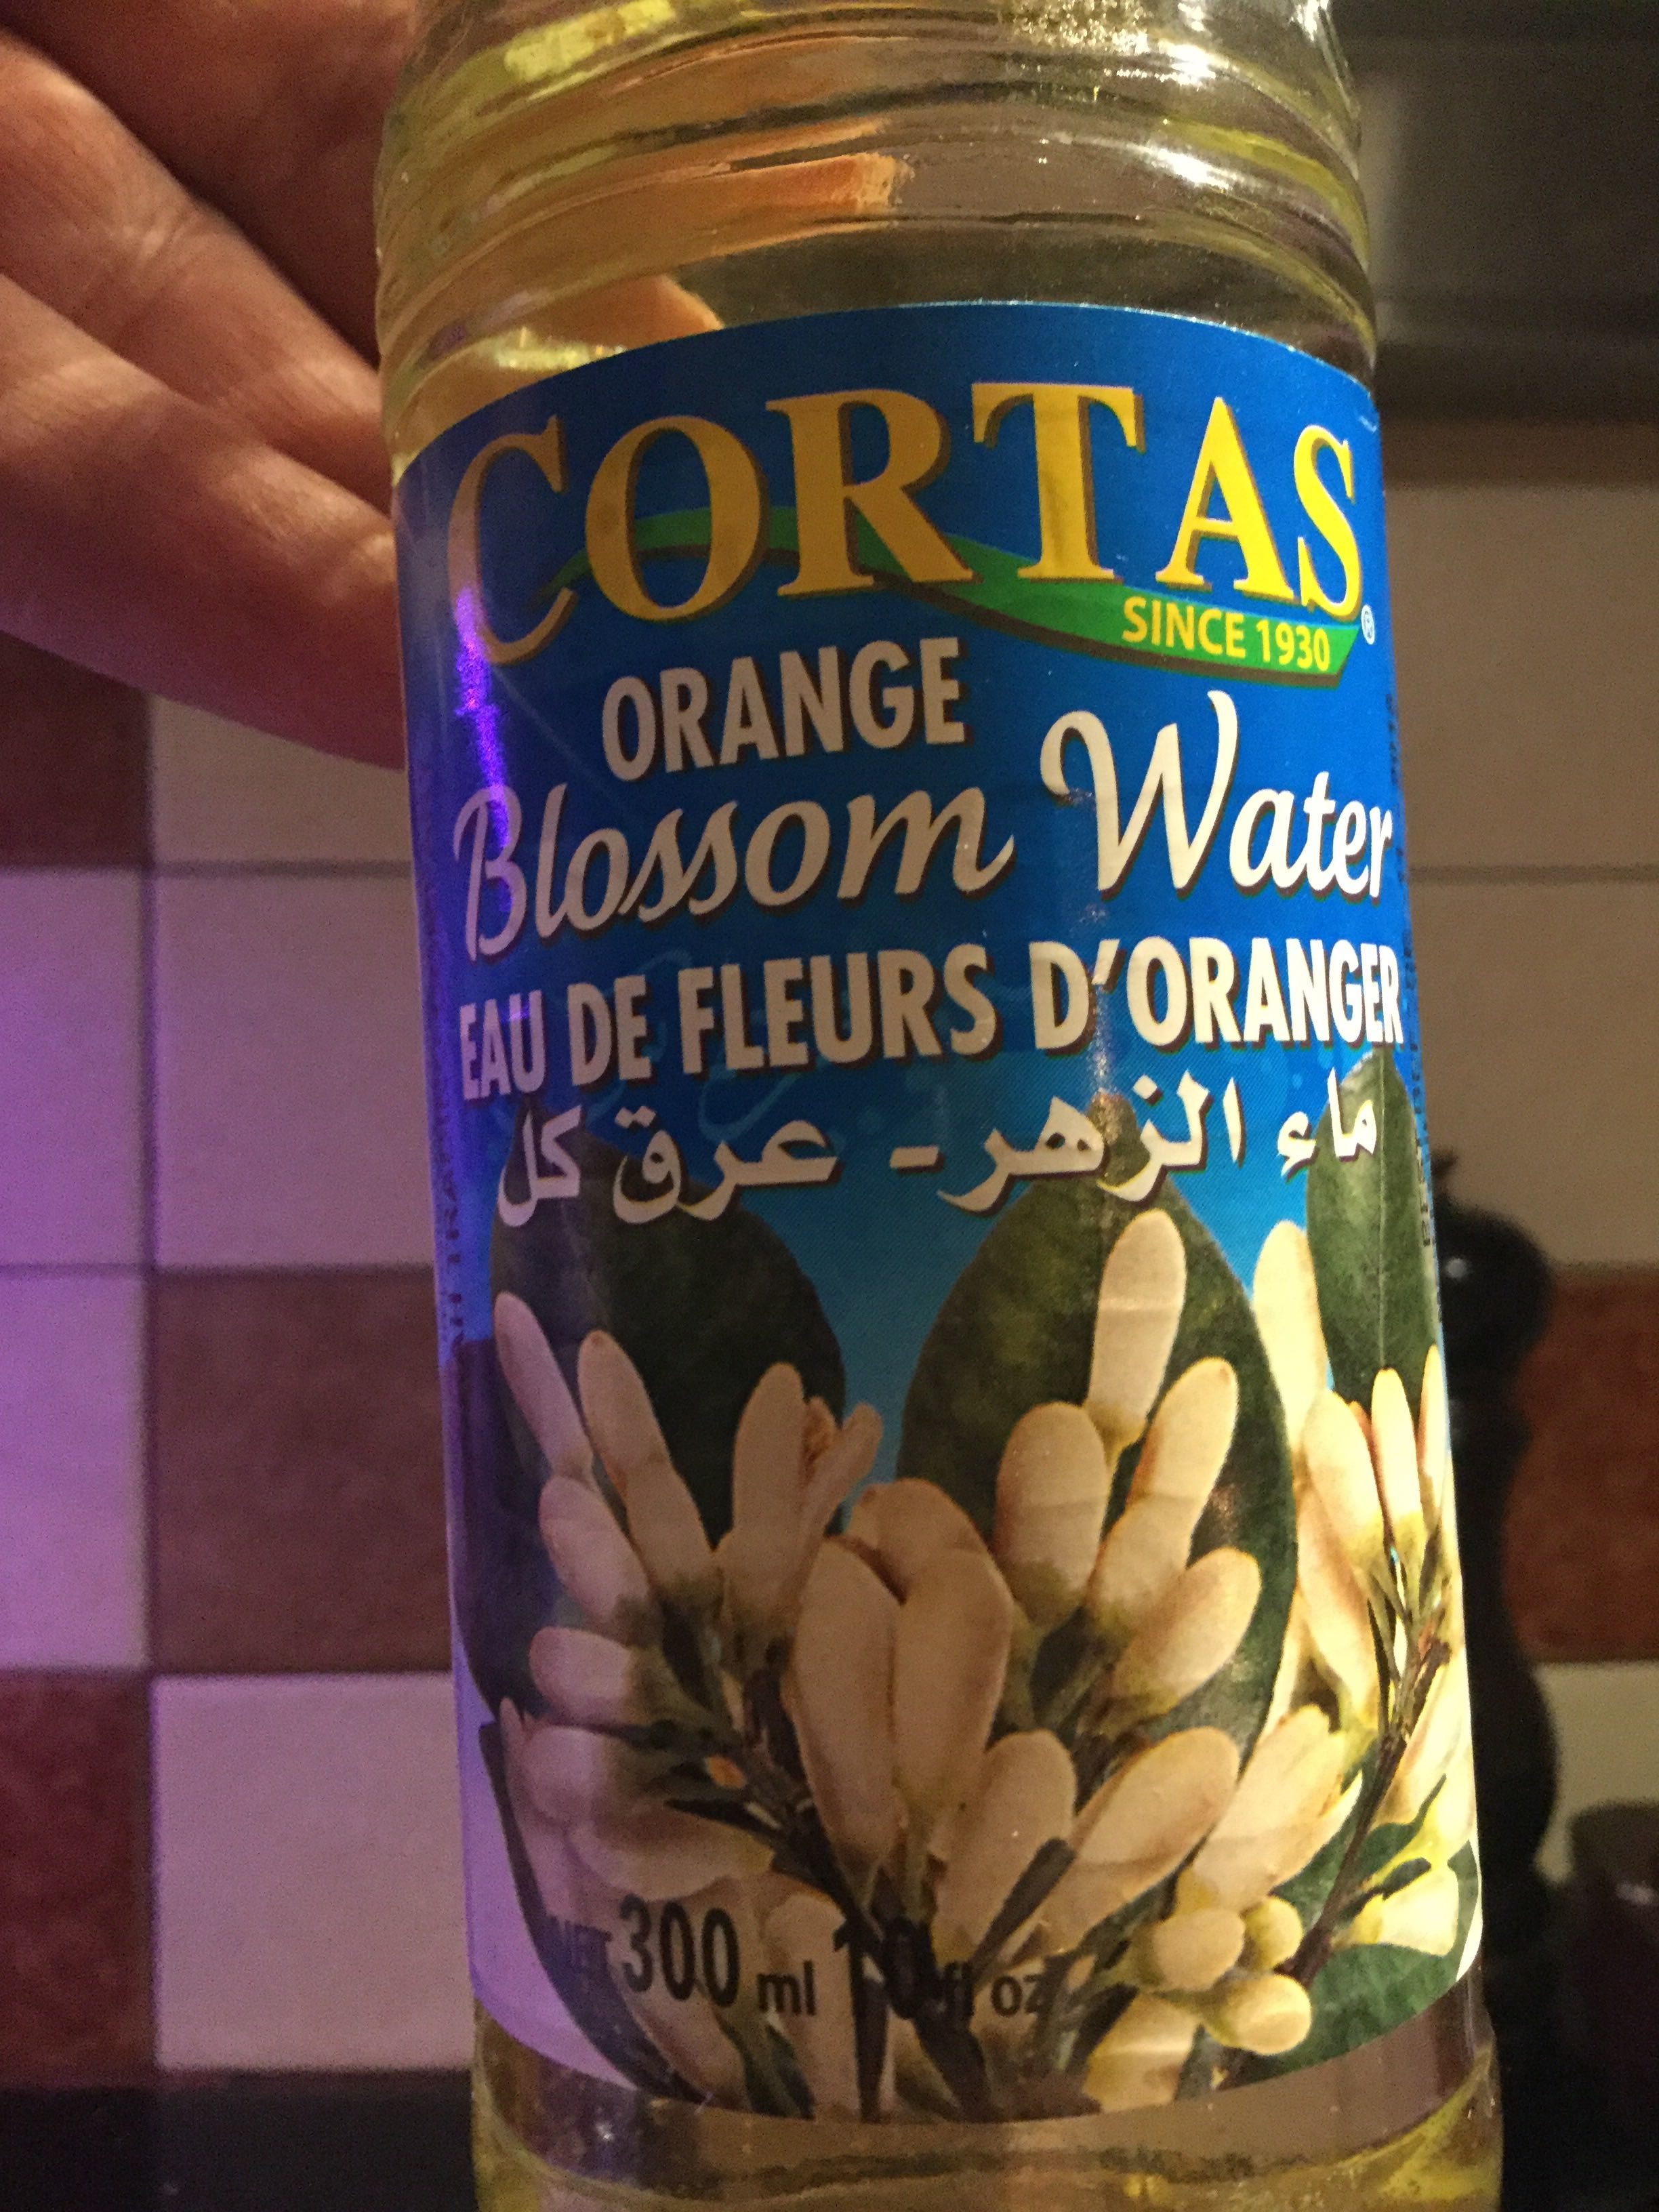 Cortas, Orange Blossom Water - Producto - en